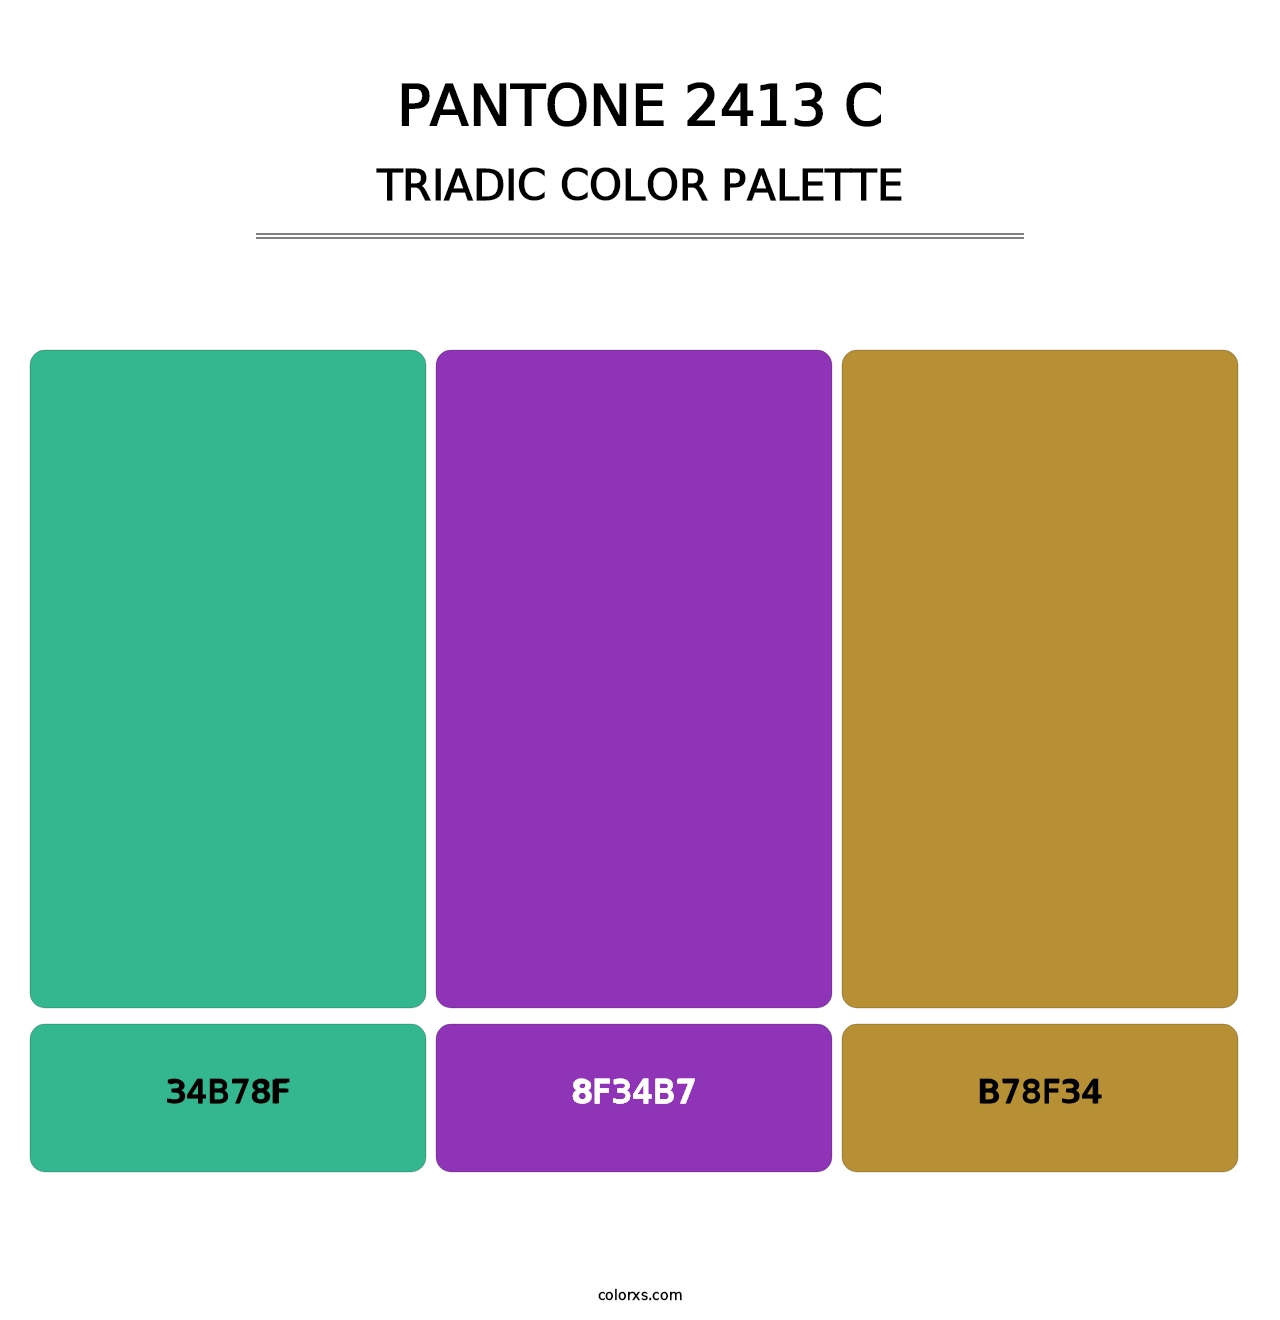 PANTONE 2413 C - Triadic Color Palette